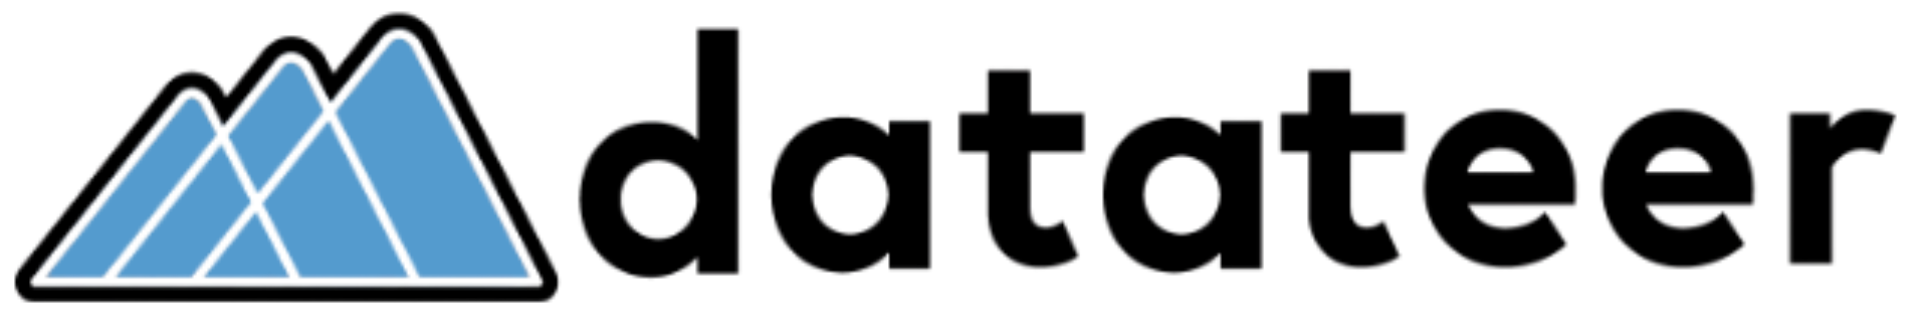 datateer-logo